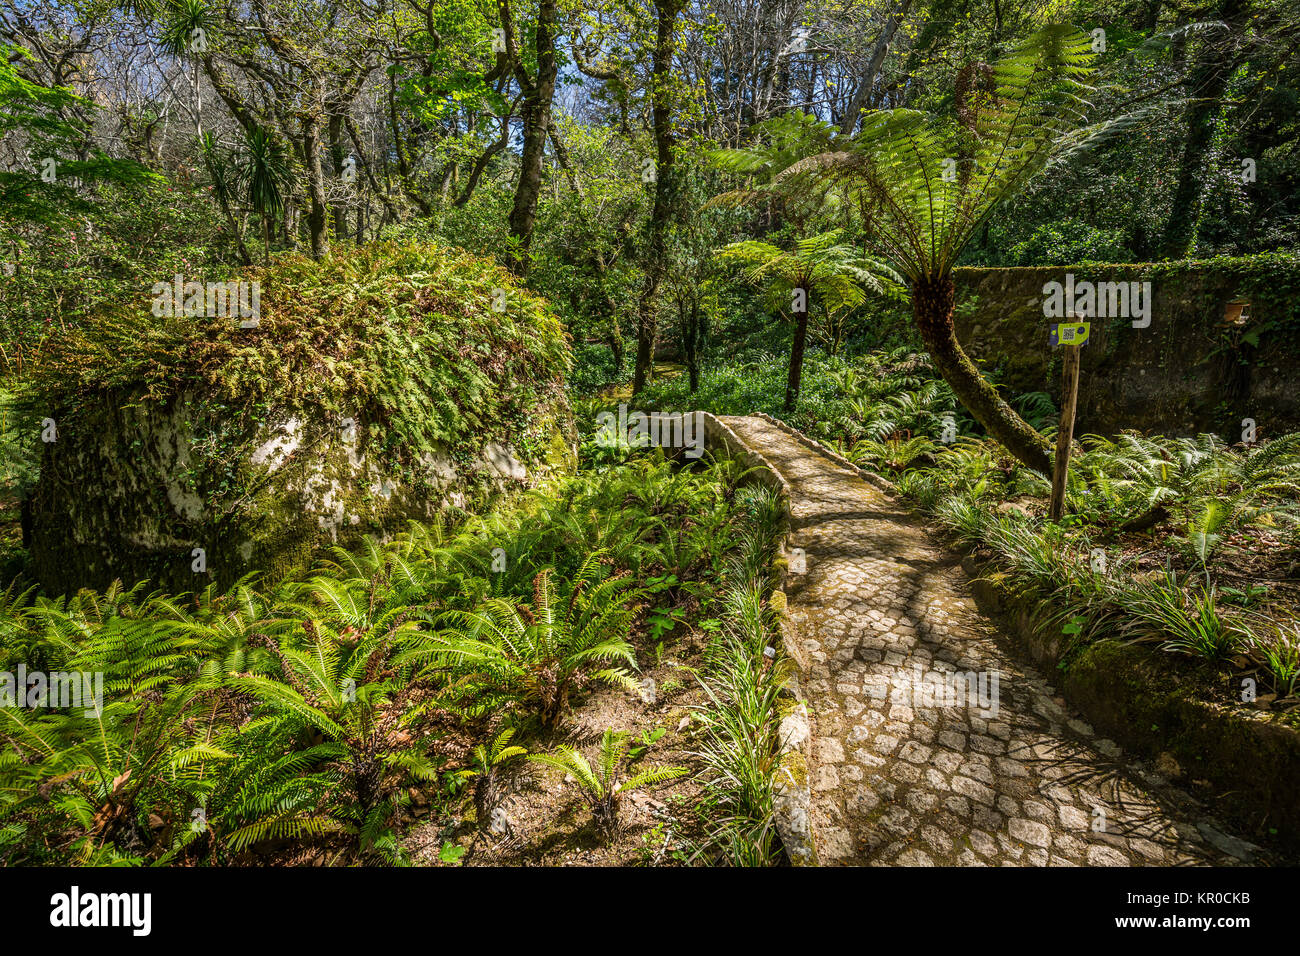 Garden Of Eden Garden Located In Sintra Portugal Stock Photo